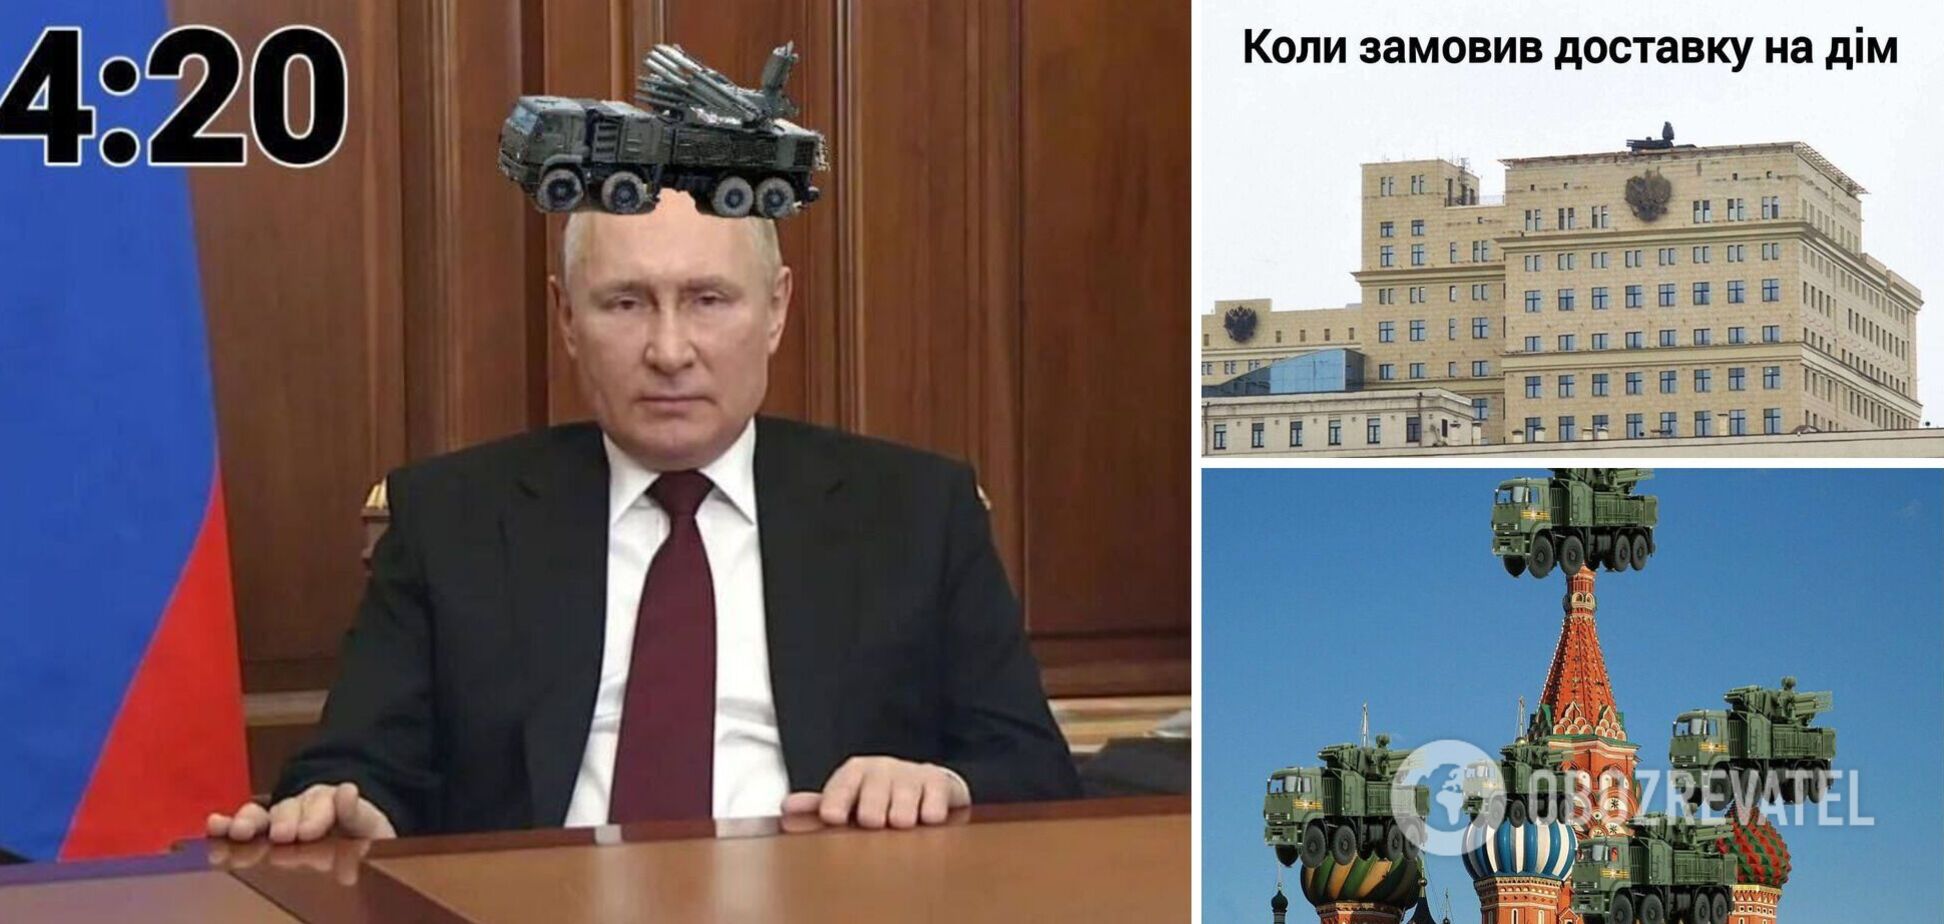 'Все йде за планом': у мережі прокотилася хвиля мемів і фотожаб після розміщення ППО в центрі Москви. Фото